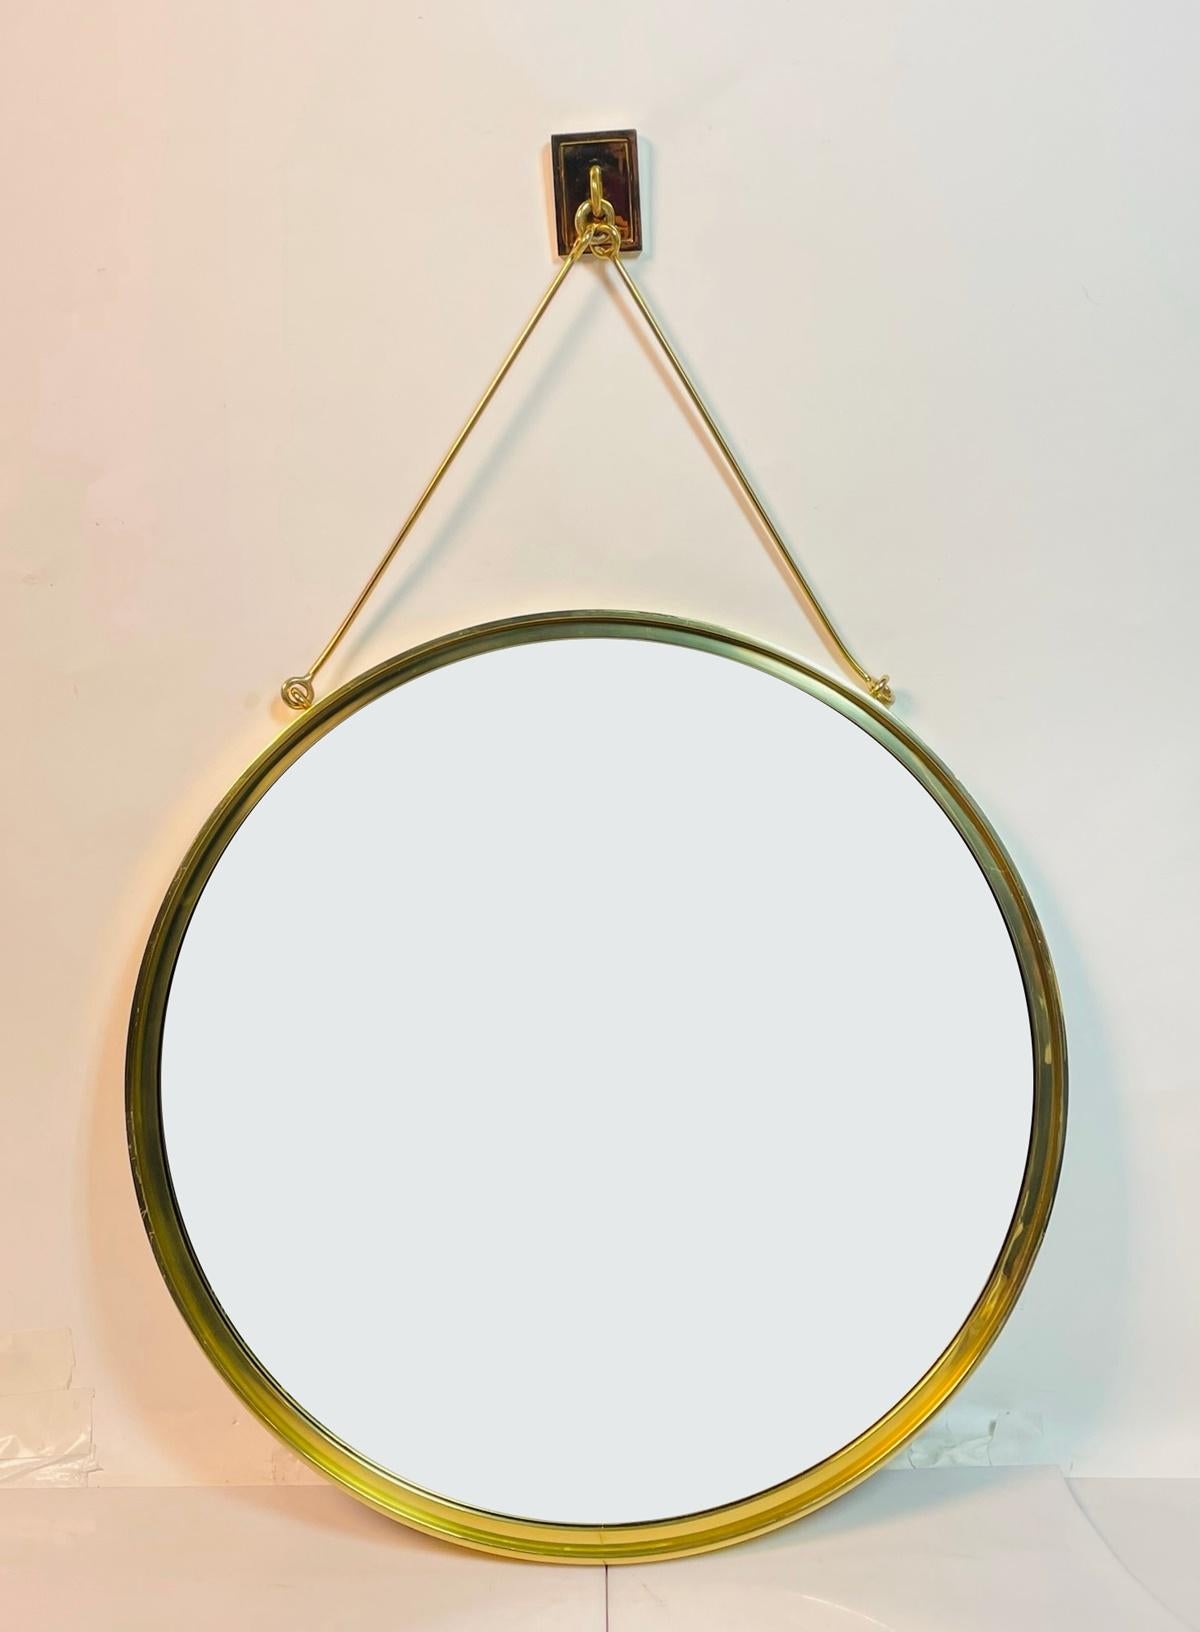 Verleihen Sie Ihrem Raum einen Hauch von moderner Eleganz mit dem Contemporary Wall Mounted Brass Mirror von Waterworks. Dieser atemberaubende runde Spiegel ist aus hochwertigem Messing gefertigt und hat eine elegante goldene Oberfläche, die